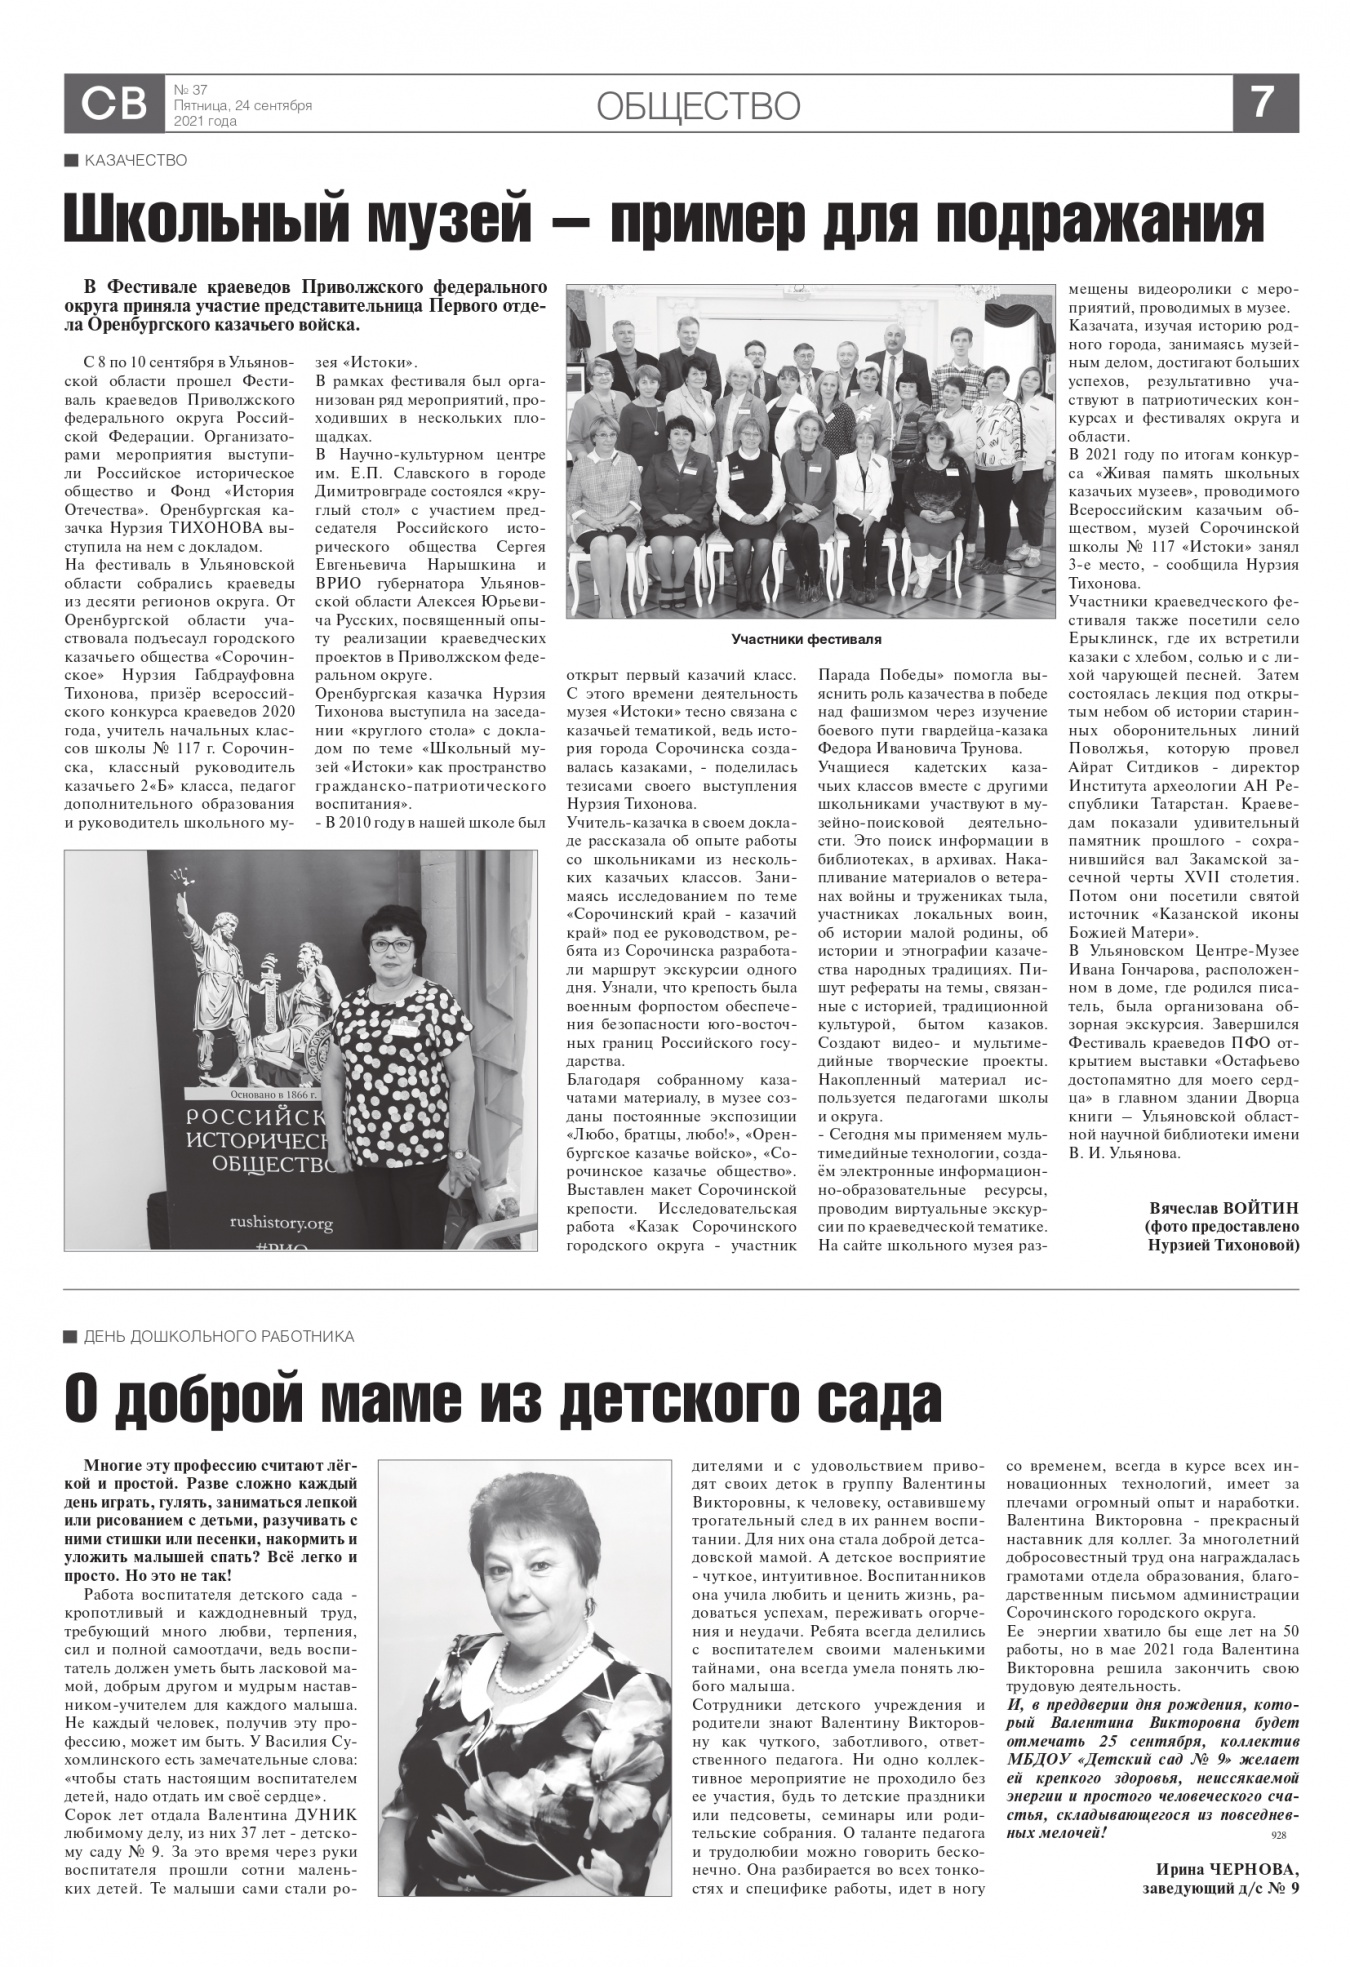 Редакция газеты «Сорочинский вестник» опубликовала статью о деятельности казаков Оренбургского казачьего войска